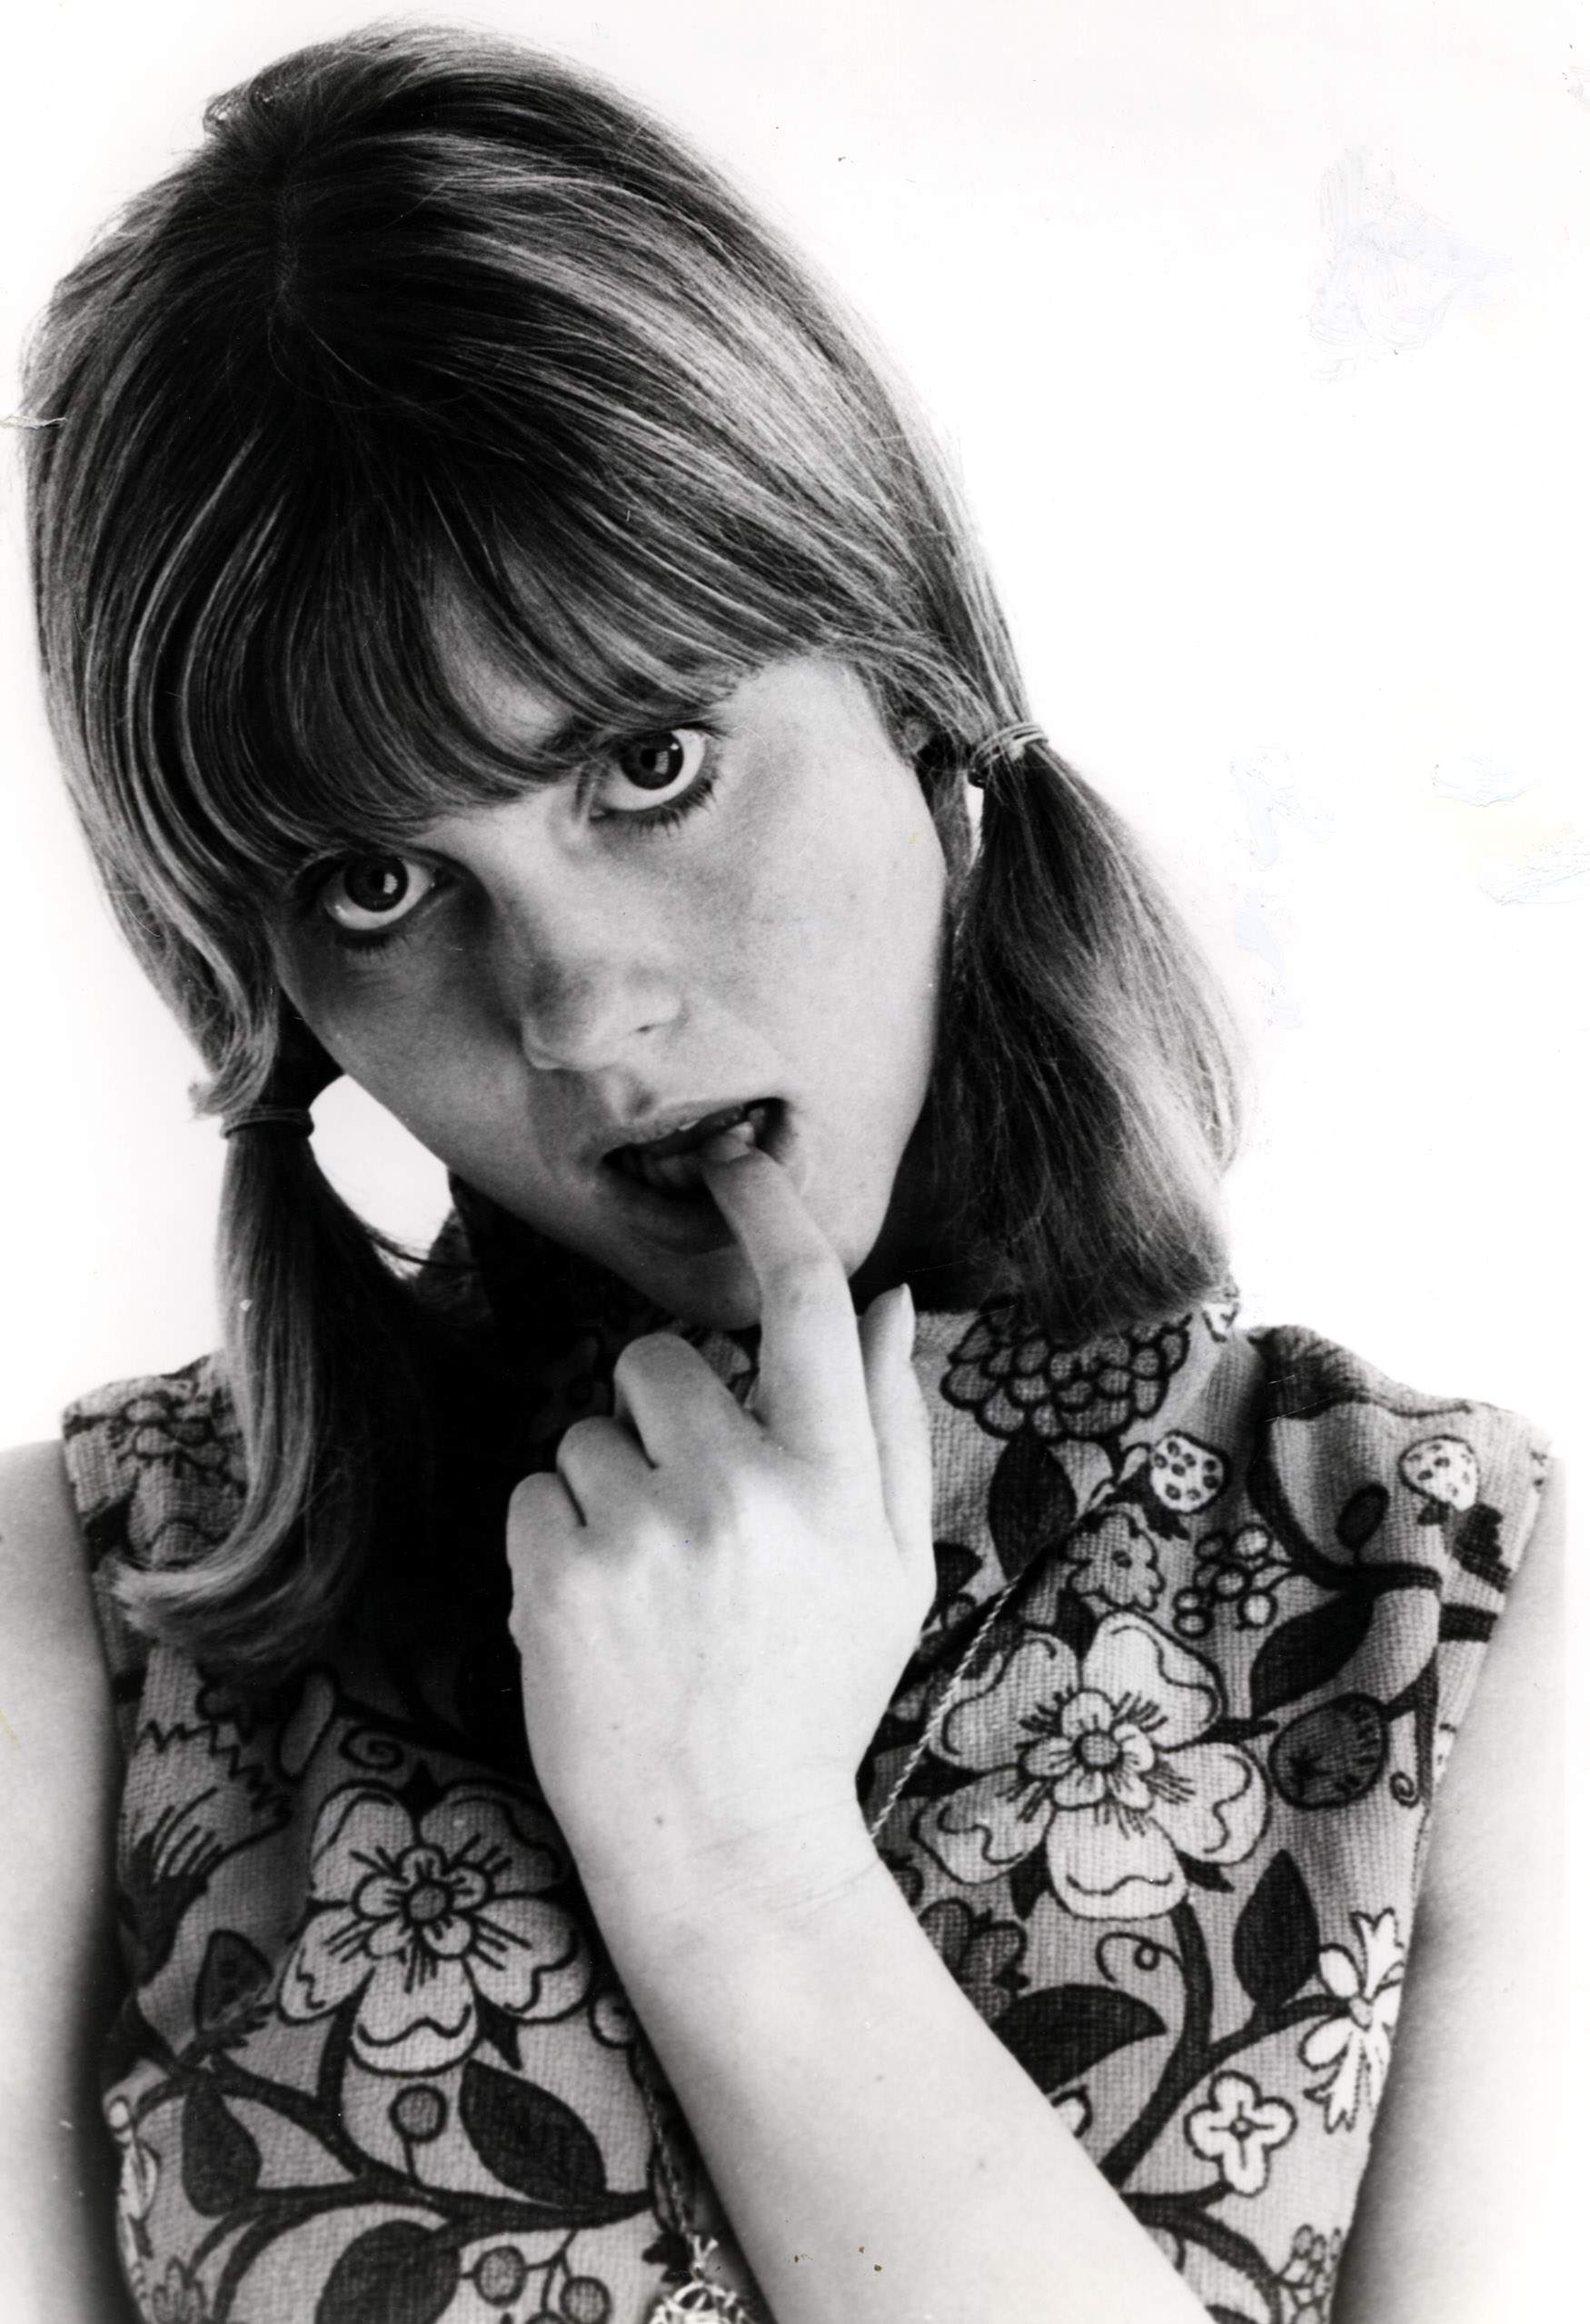 Olivia Newton-John en una foto en blanco y negro en 1965. | Foto: Getty Images